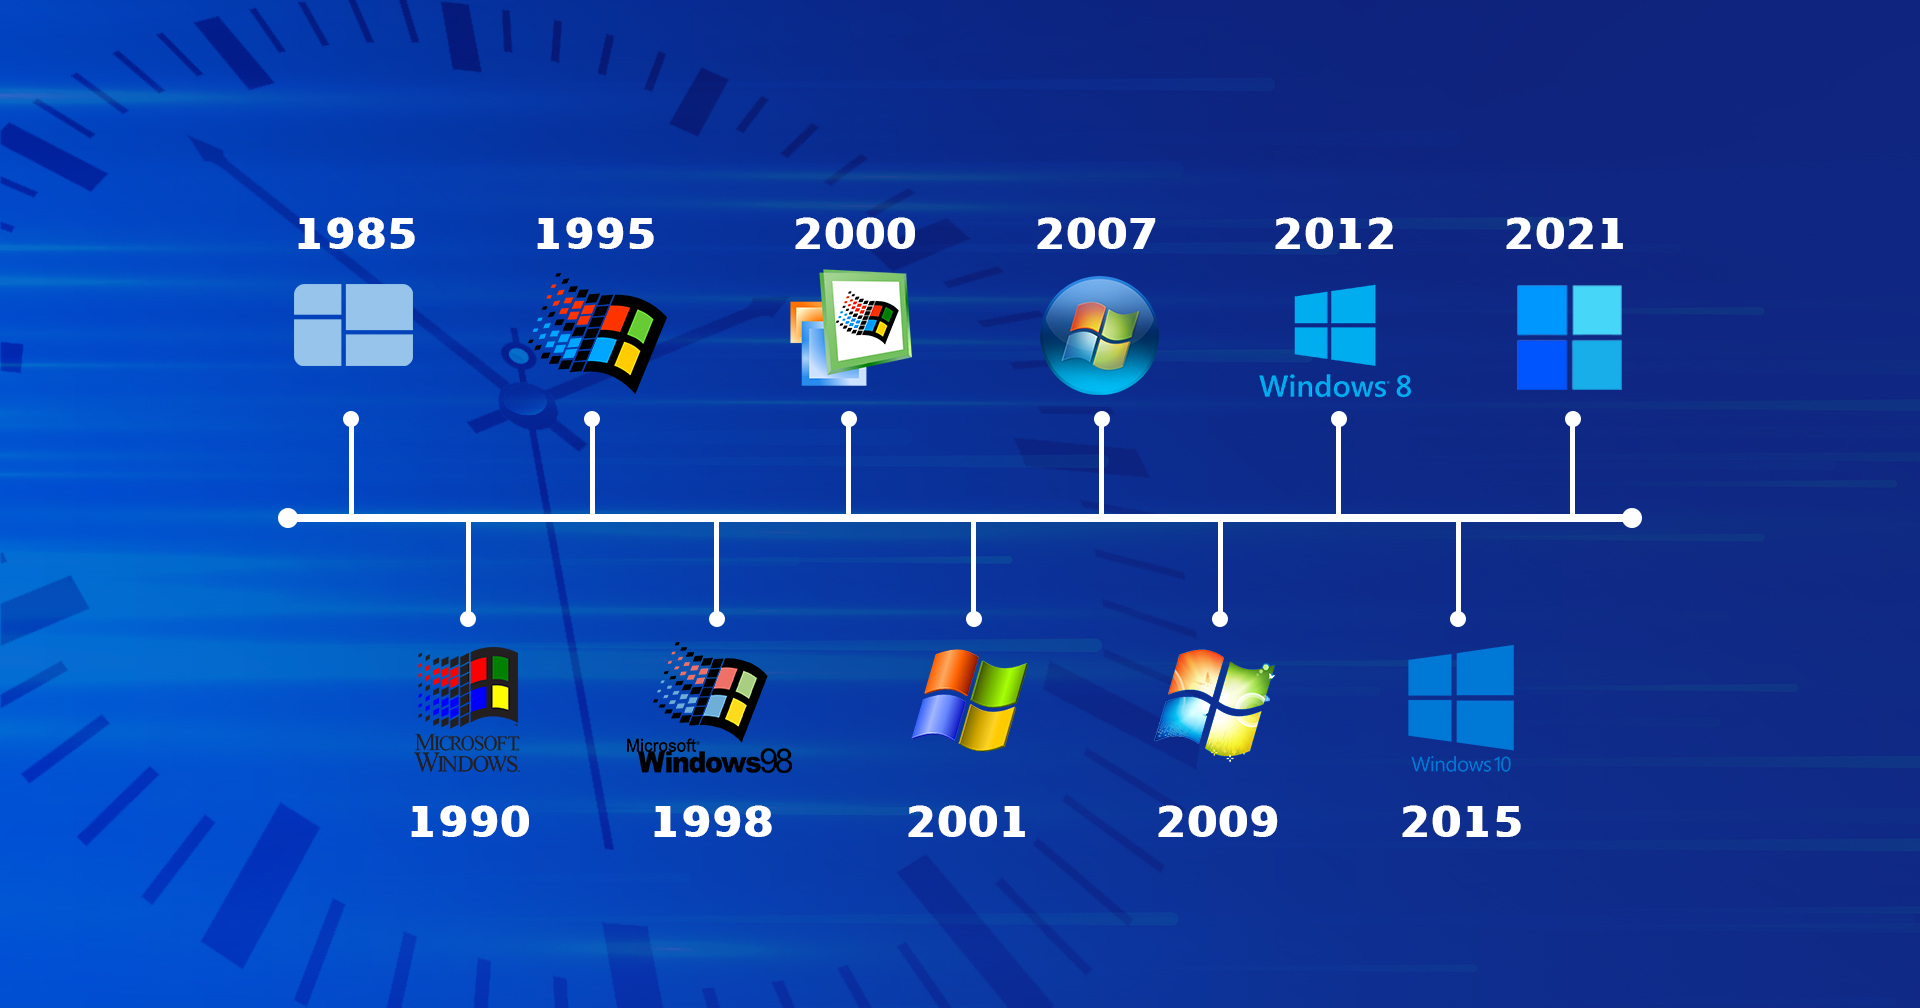 ย้อนประวัติ Windows รุ่นไหนรุ่ง-ร่วง!